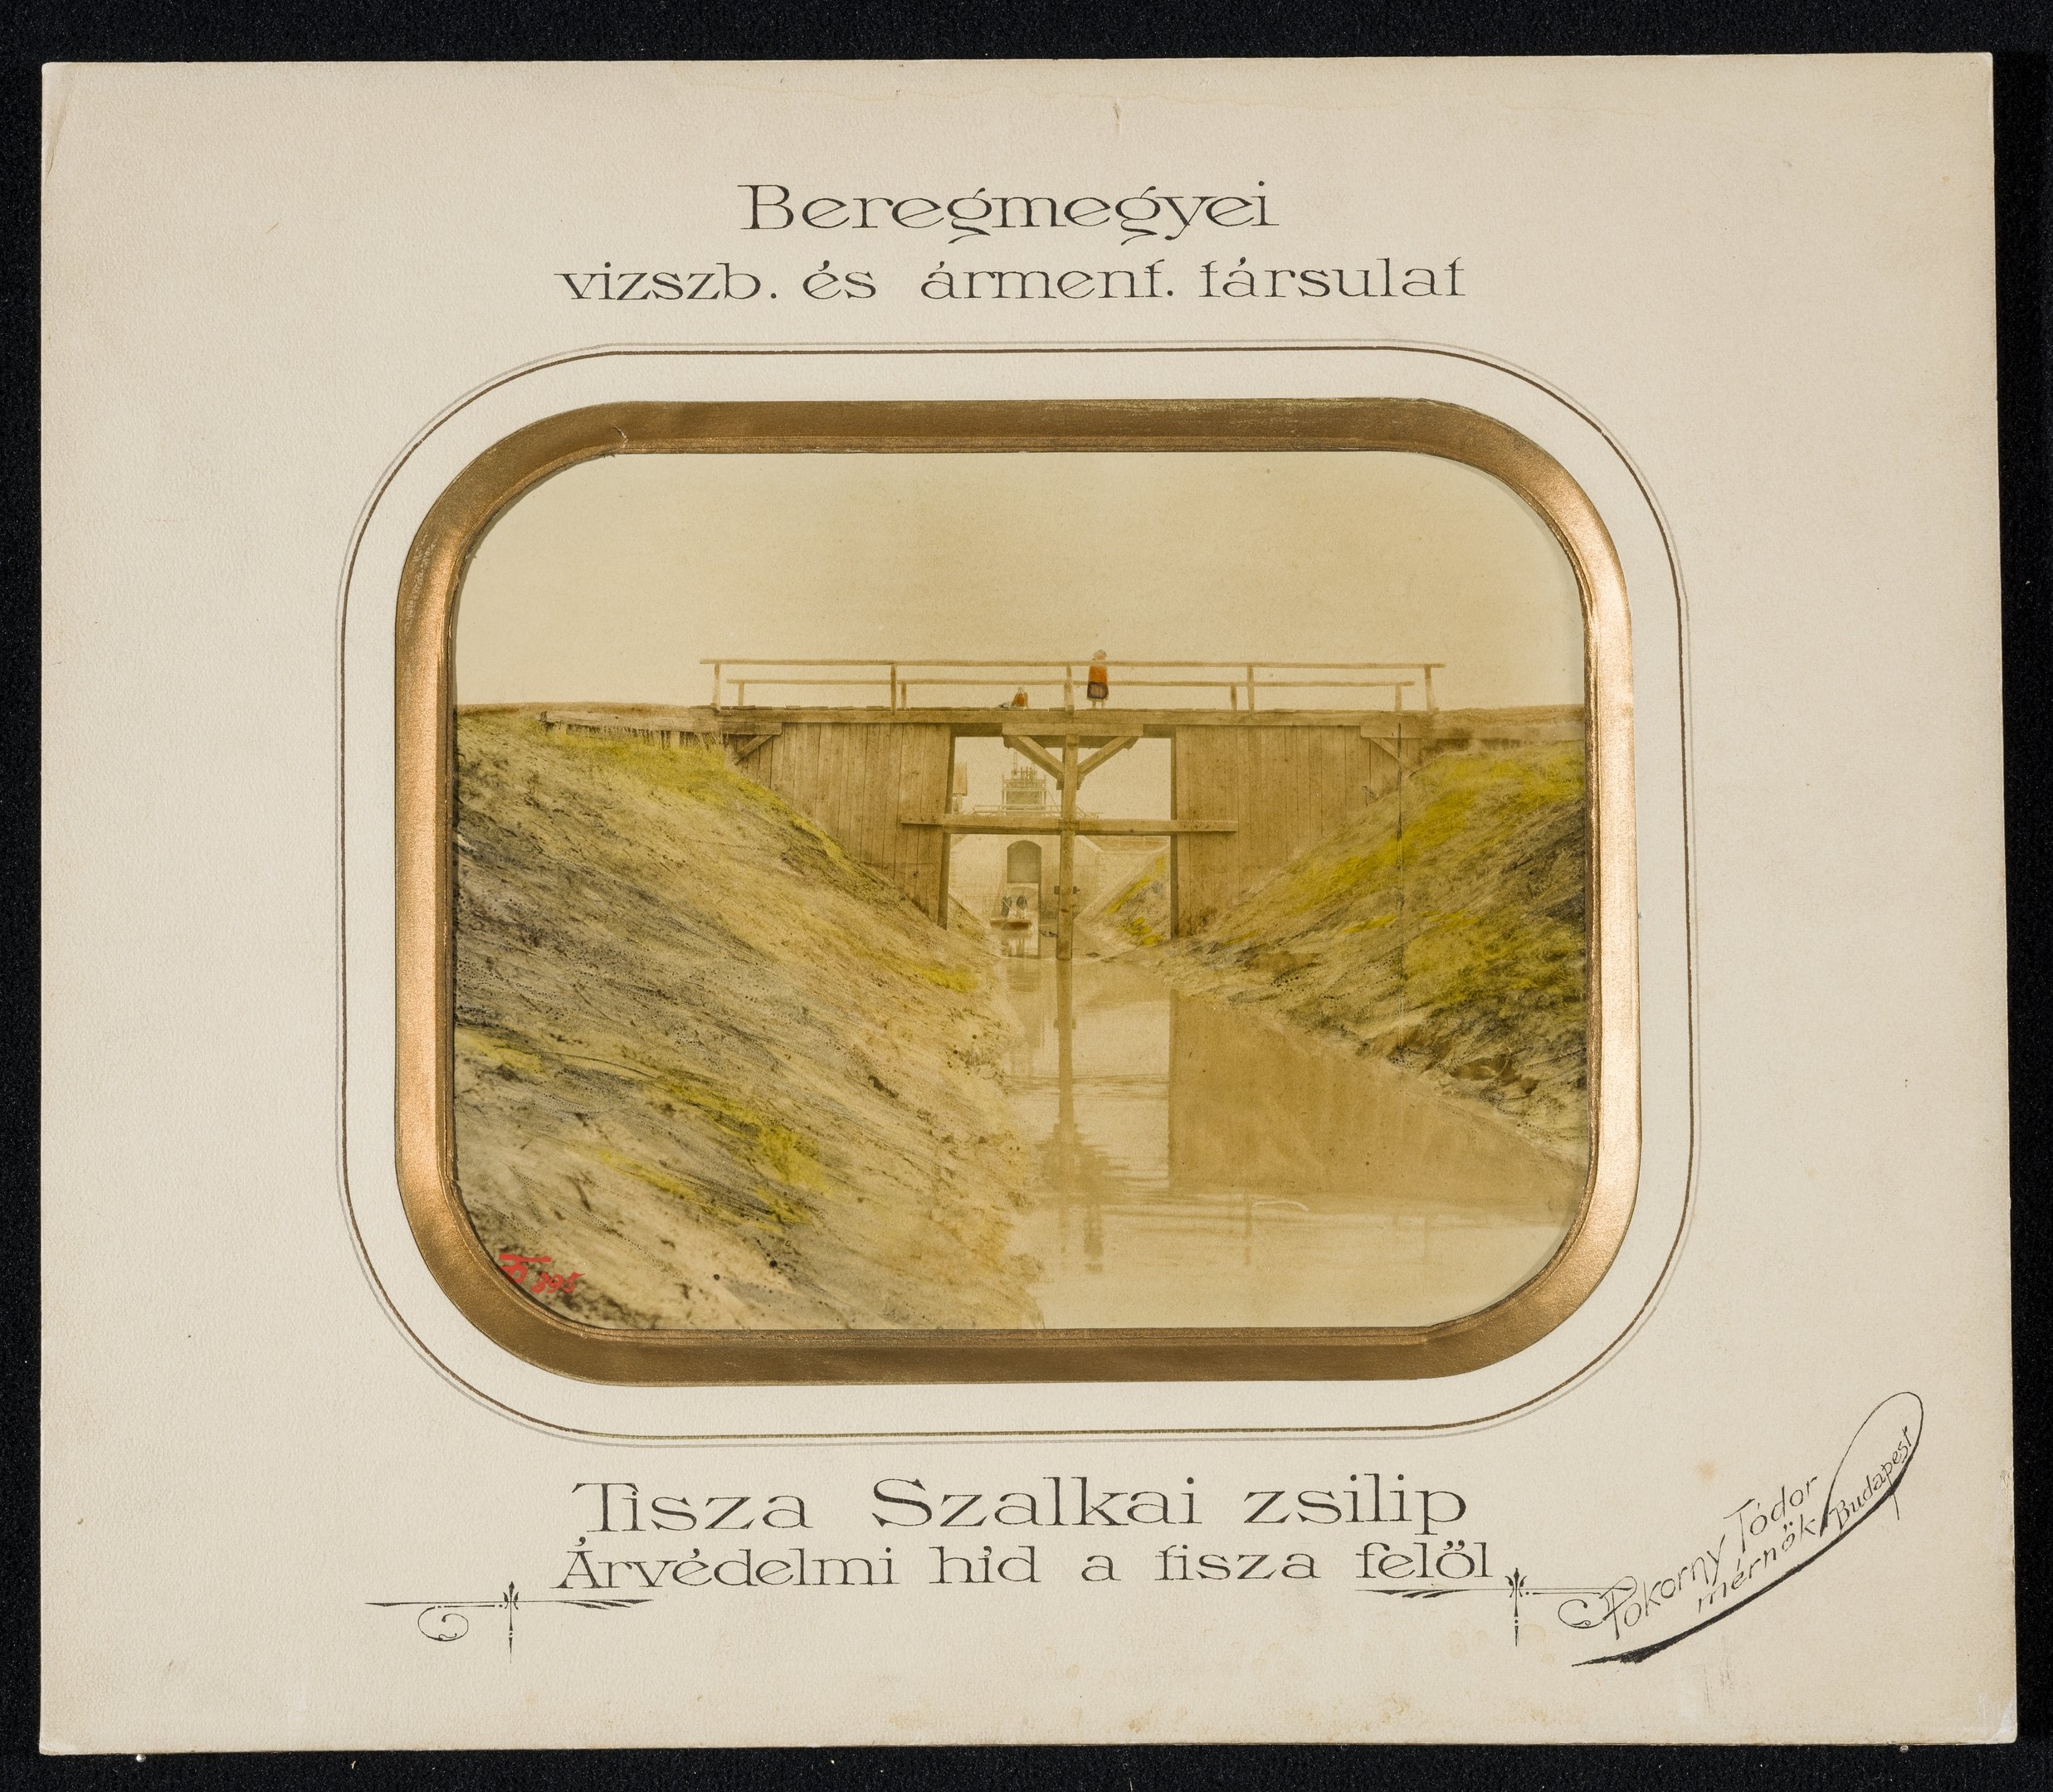 Tiszaszalkai zsilip - Árvédelmi híd a Tisza felől (Magyar Környezetvédelmi és Vízügyi Múzeum - Duna Múzeum CC BY-NC-SA)